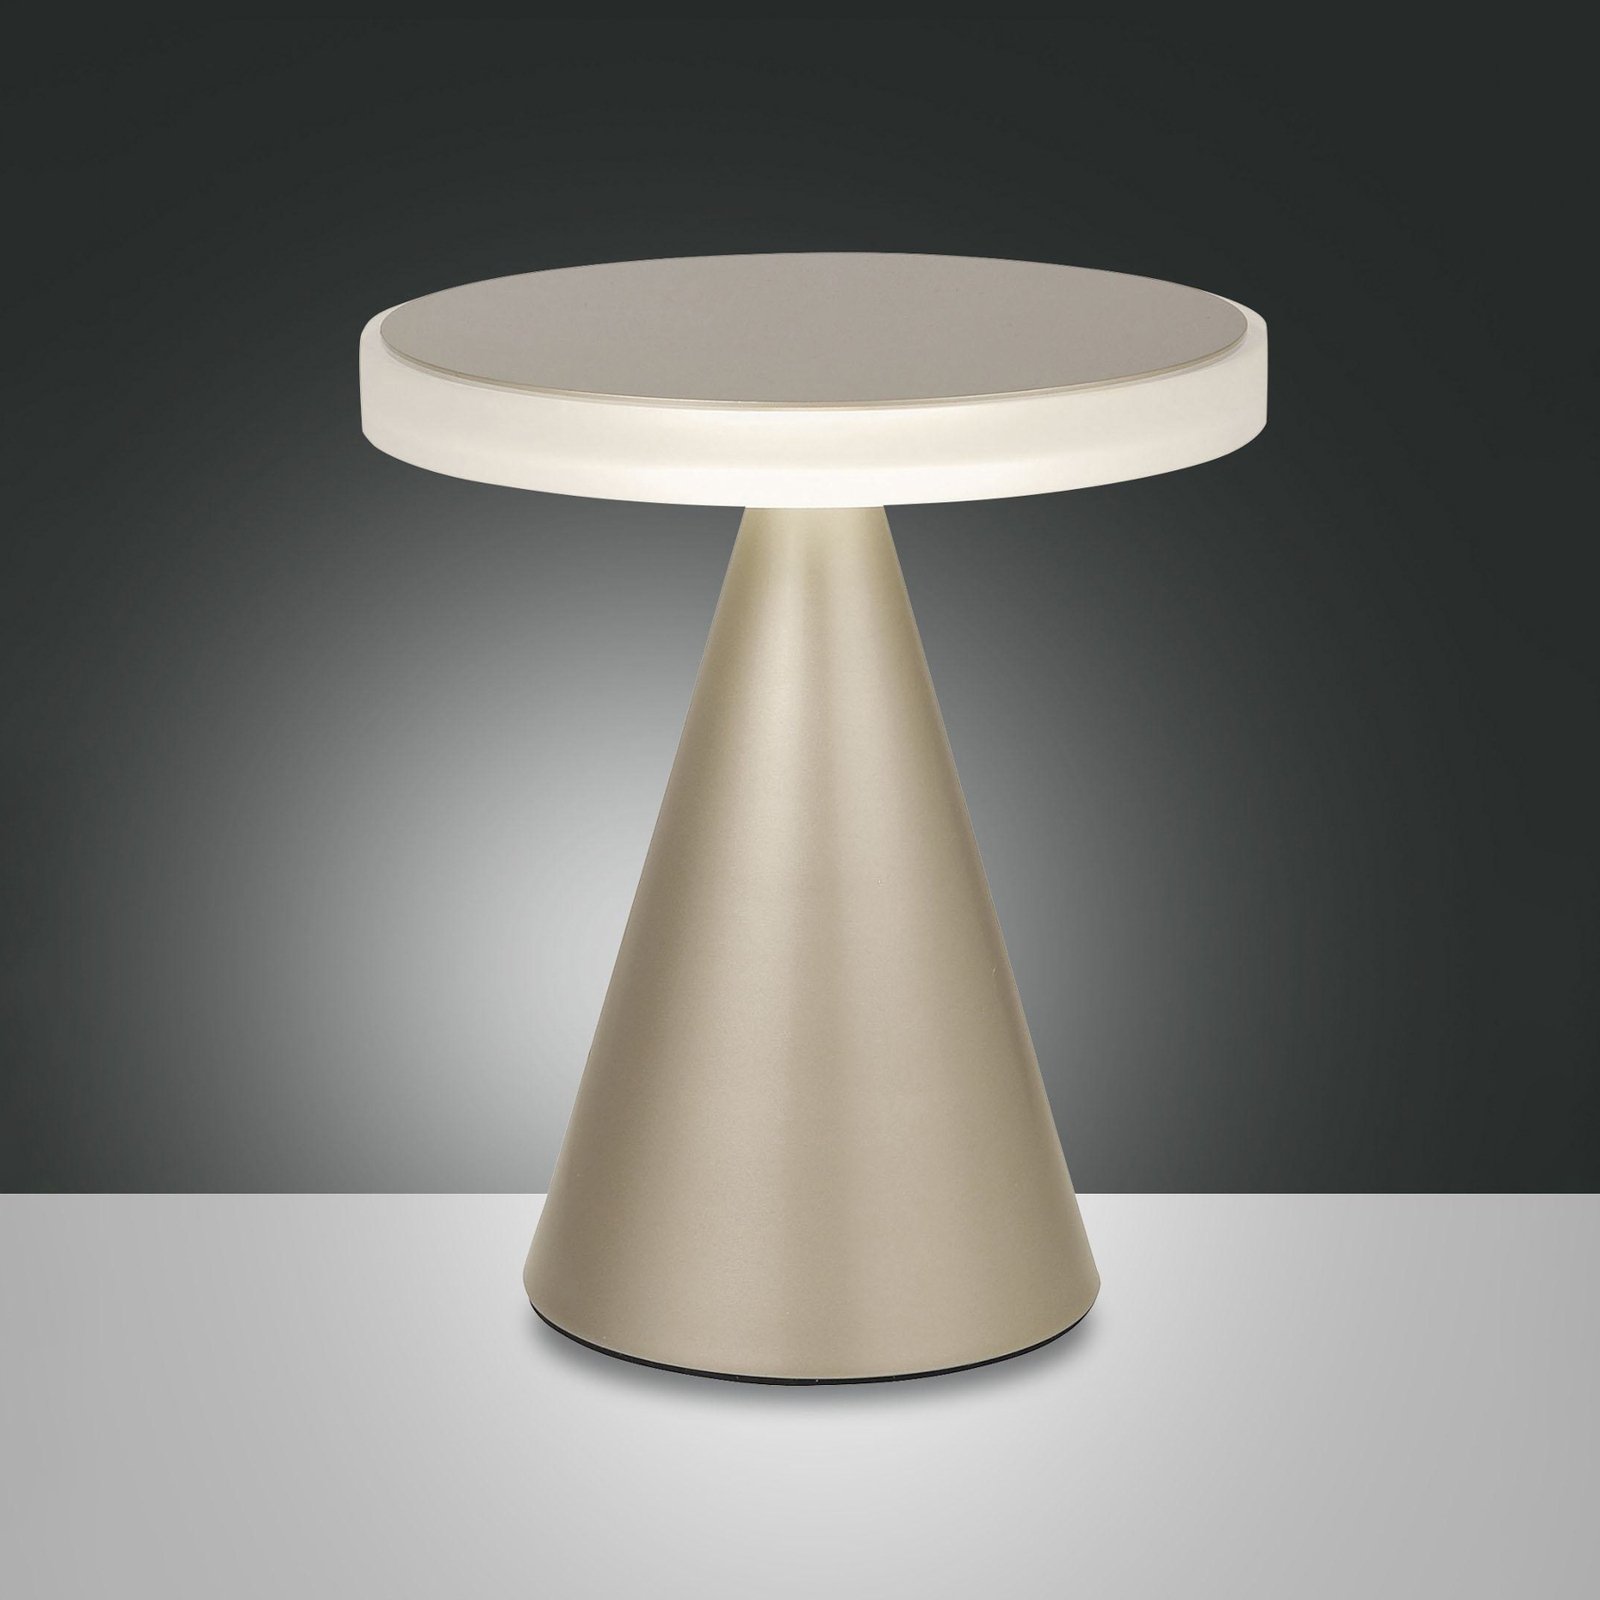 Lampe de table LED Neutra, hauteur 27 cm, or mat, variateur d'intensité